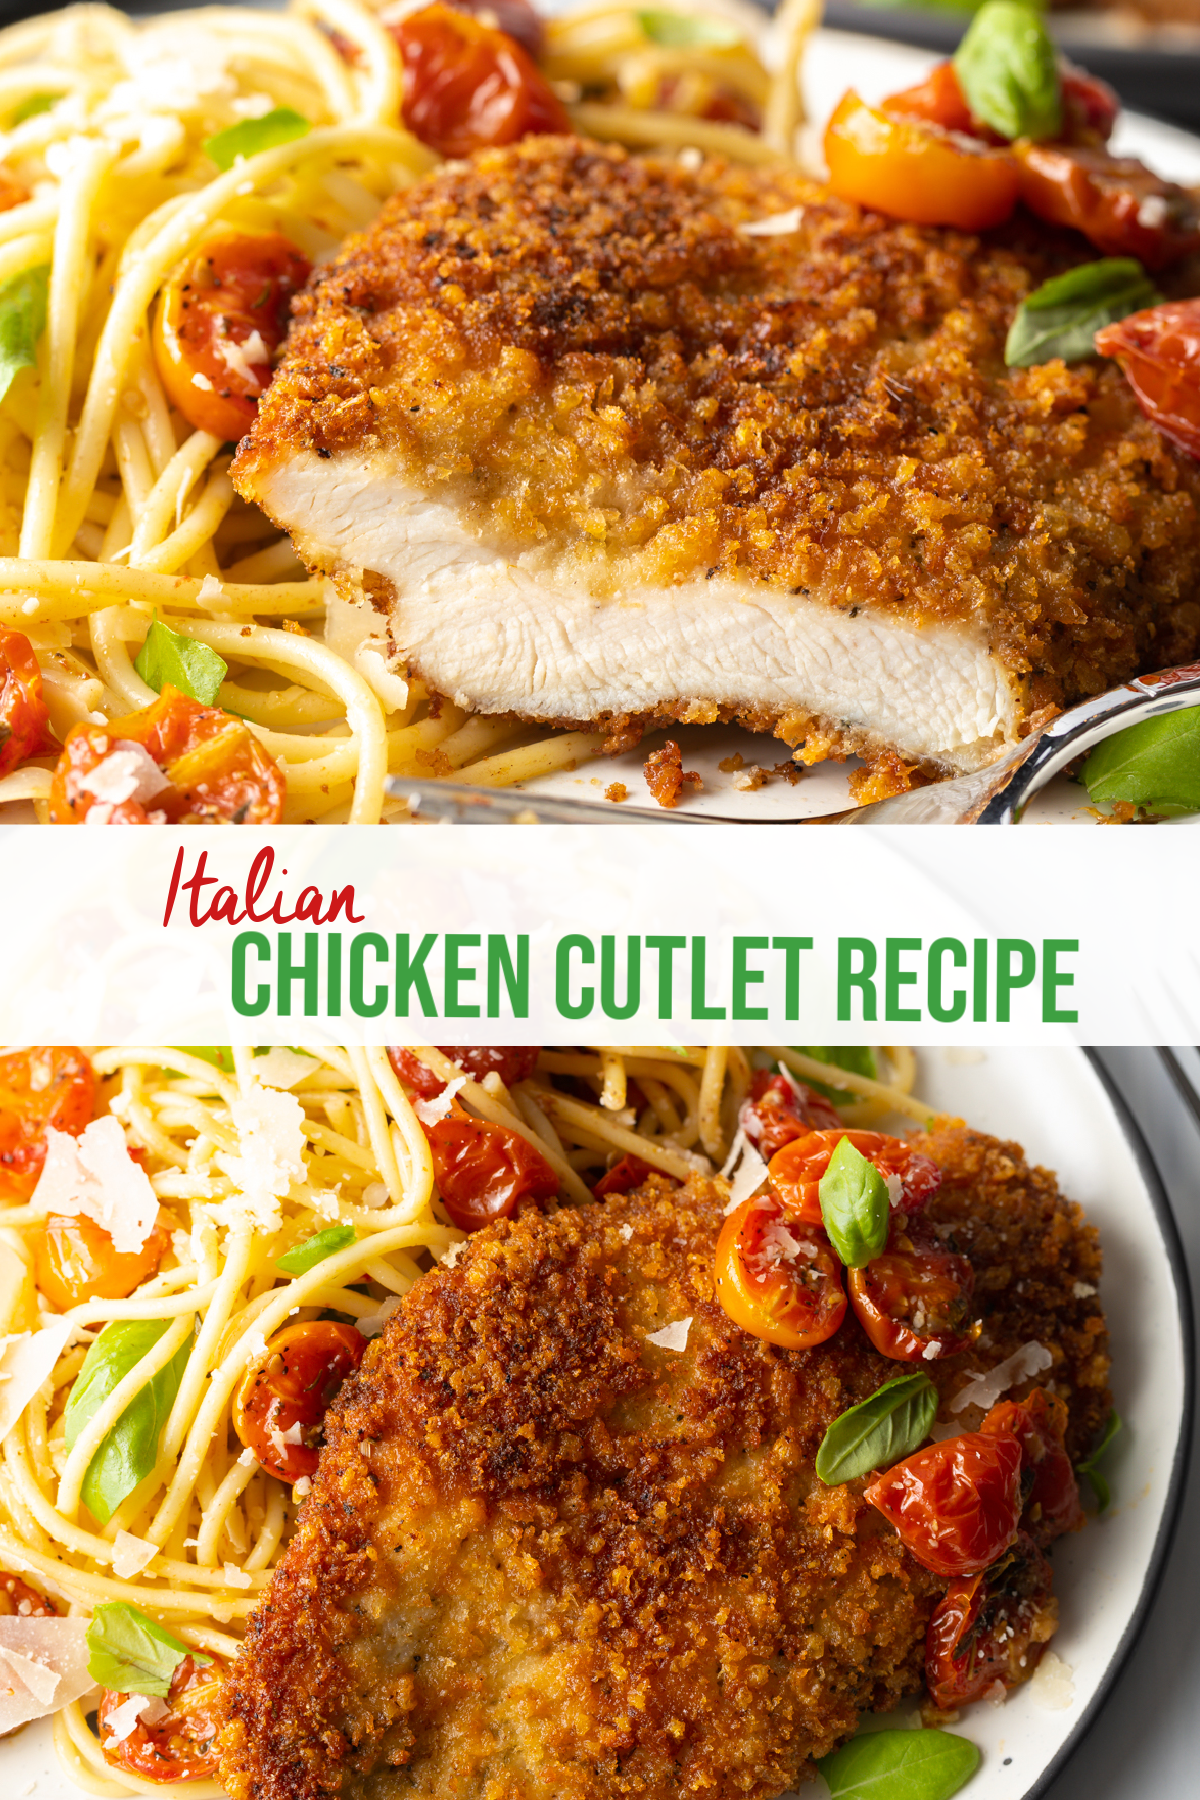 Italian chicken cutlet recipe